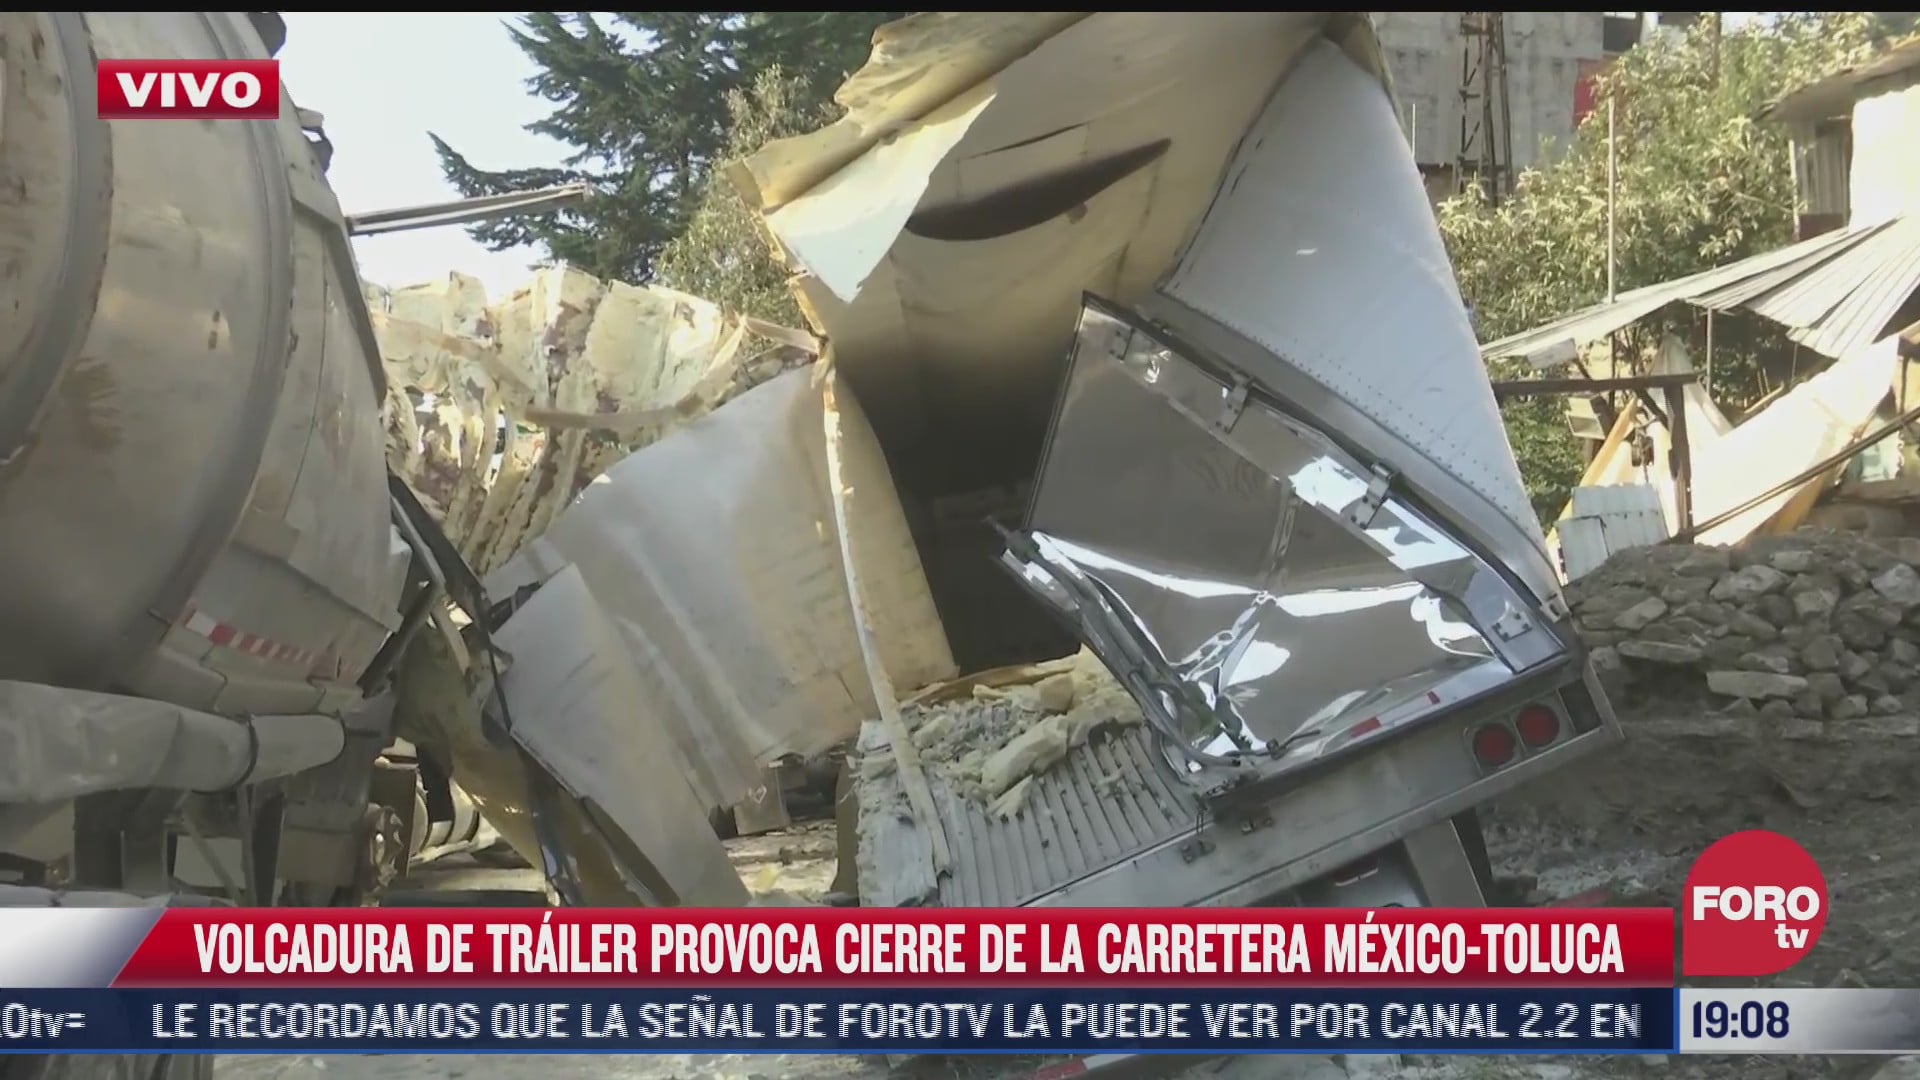 volcadura de trailer provoca cierre de carretera mexico toluca